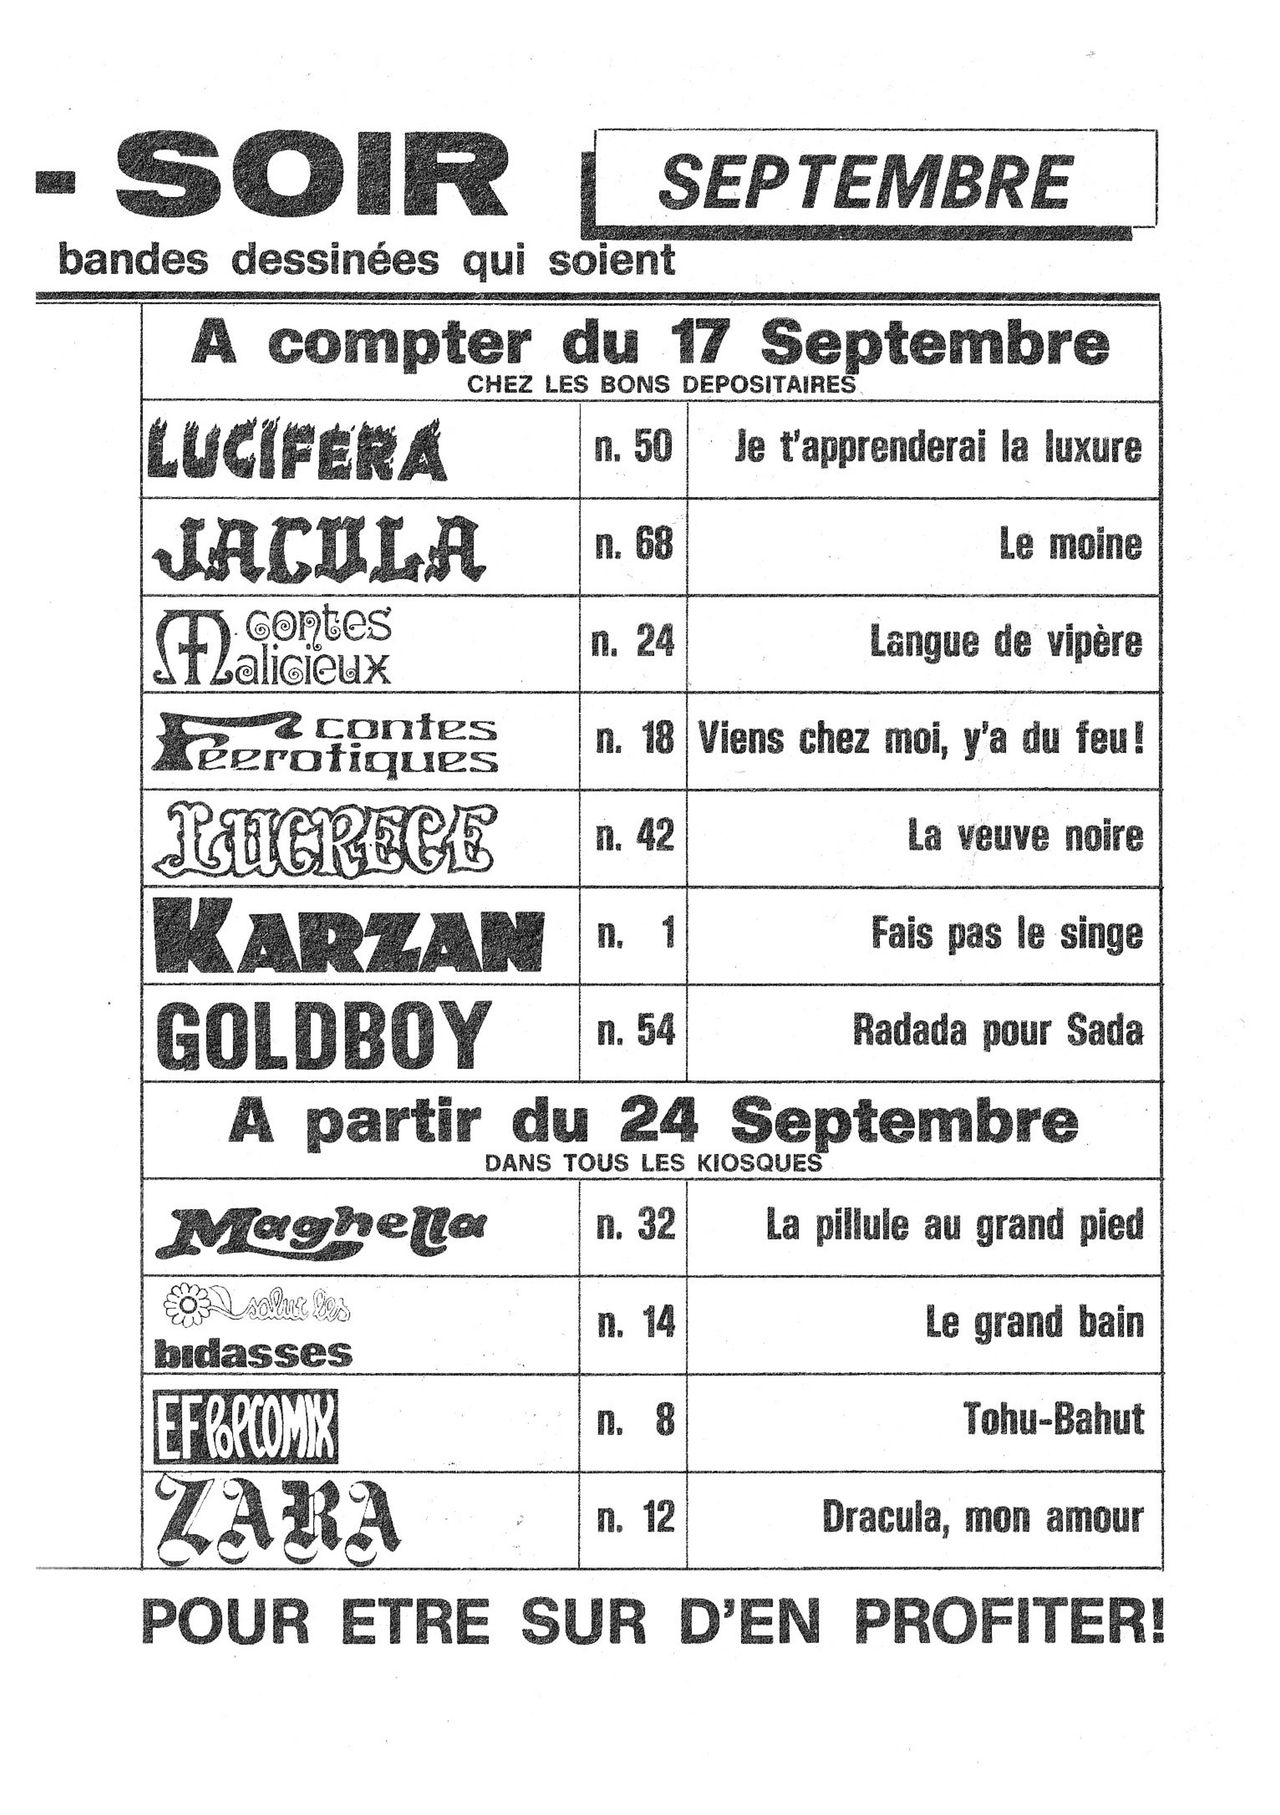 Elvifrance - Goldboy - T54 - Radada pour Sada [French] 114